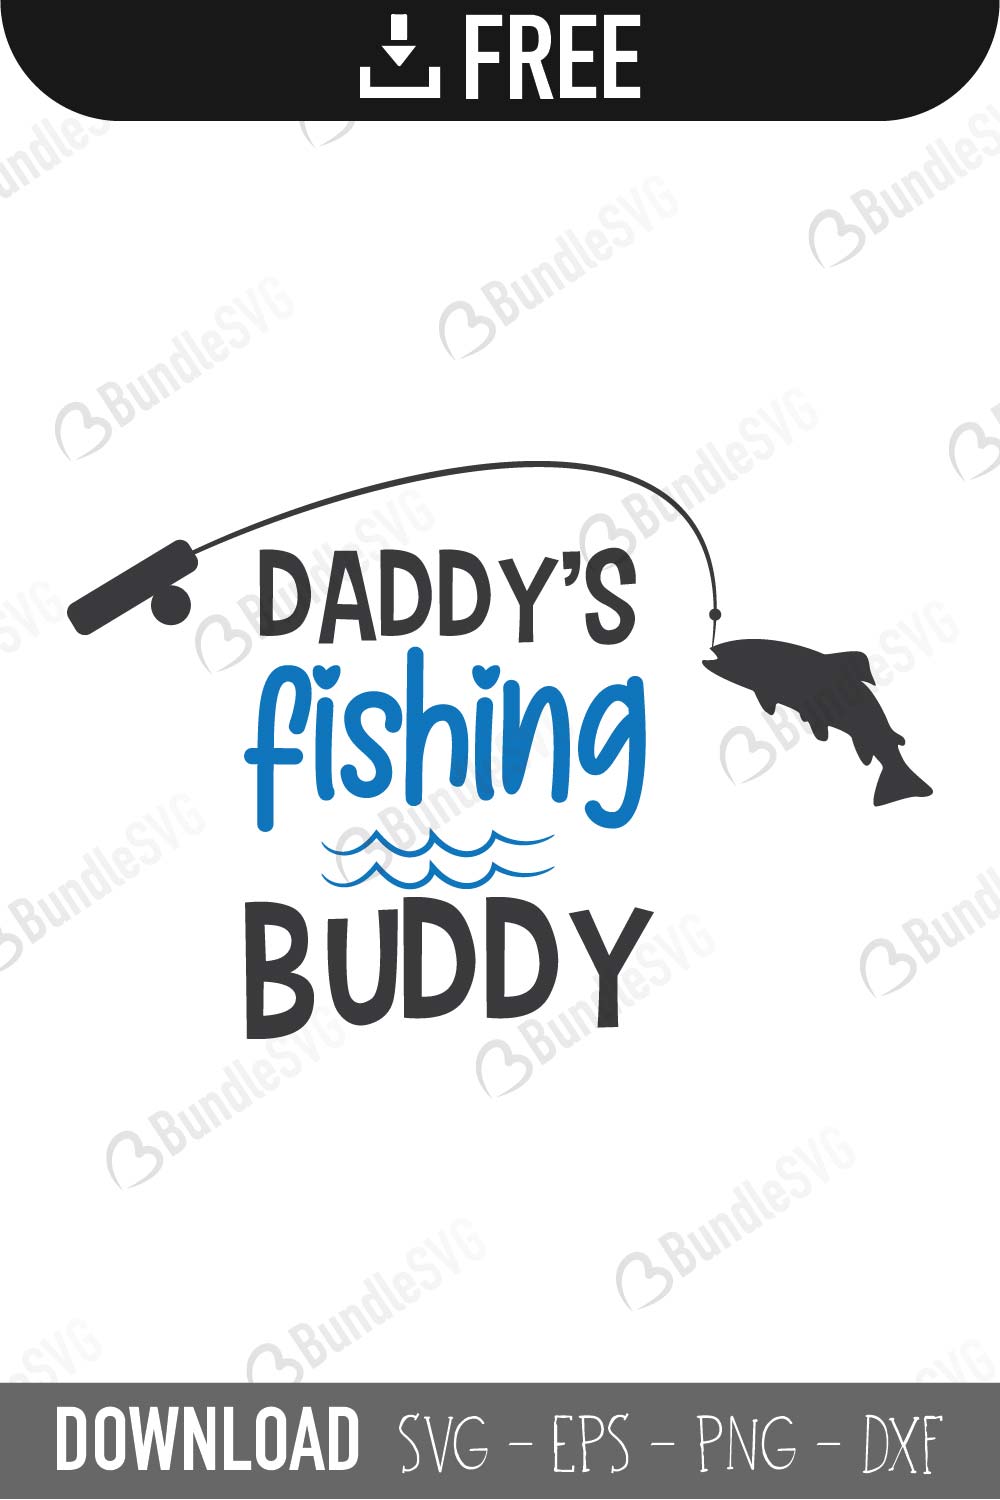 Download Fishing SVG Cut Files Free Download | BundleSVG